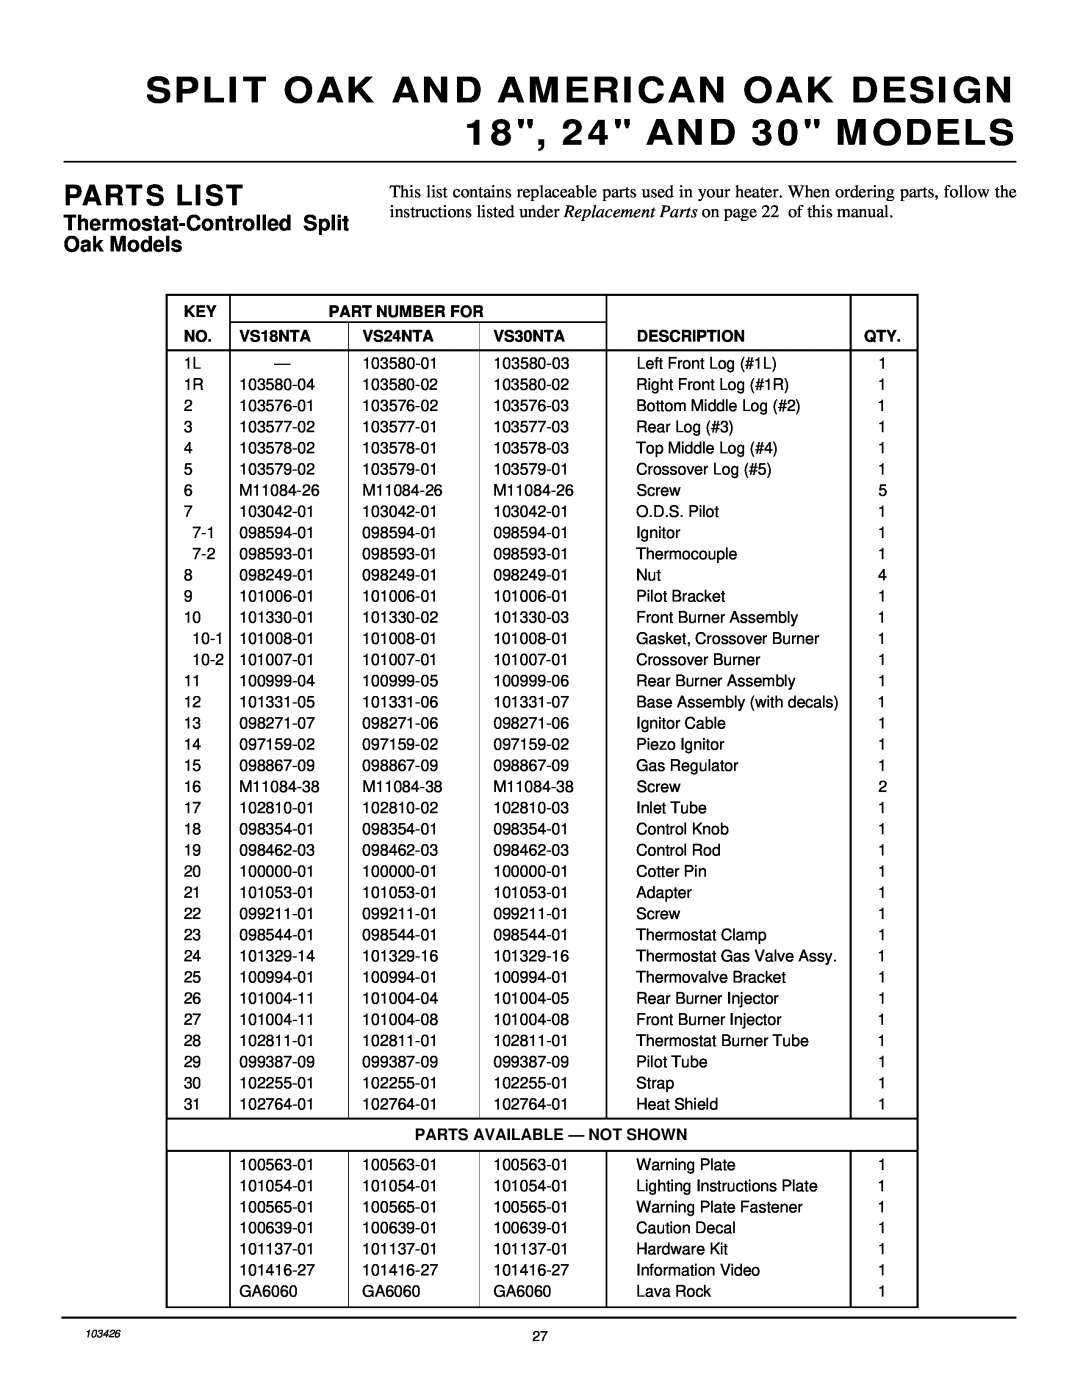 Desa 103426-01 Thermostat-ControlledSplit Oak Models, Parts List, Part Number For, VS18NTA, VS24NTA, VS30NTA, Description 